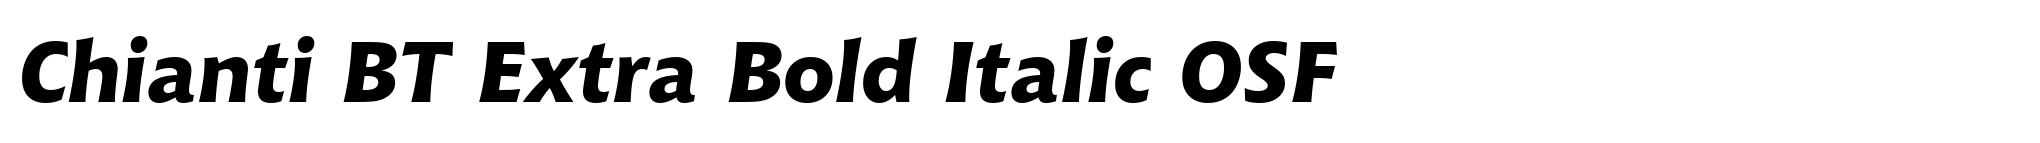 Chianti BT Extra Bold Italic OSF image